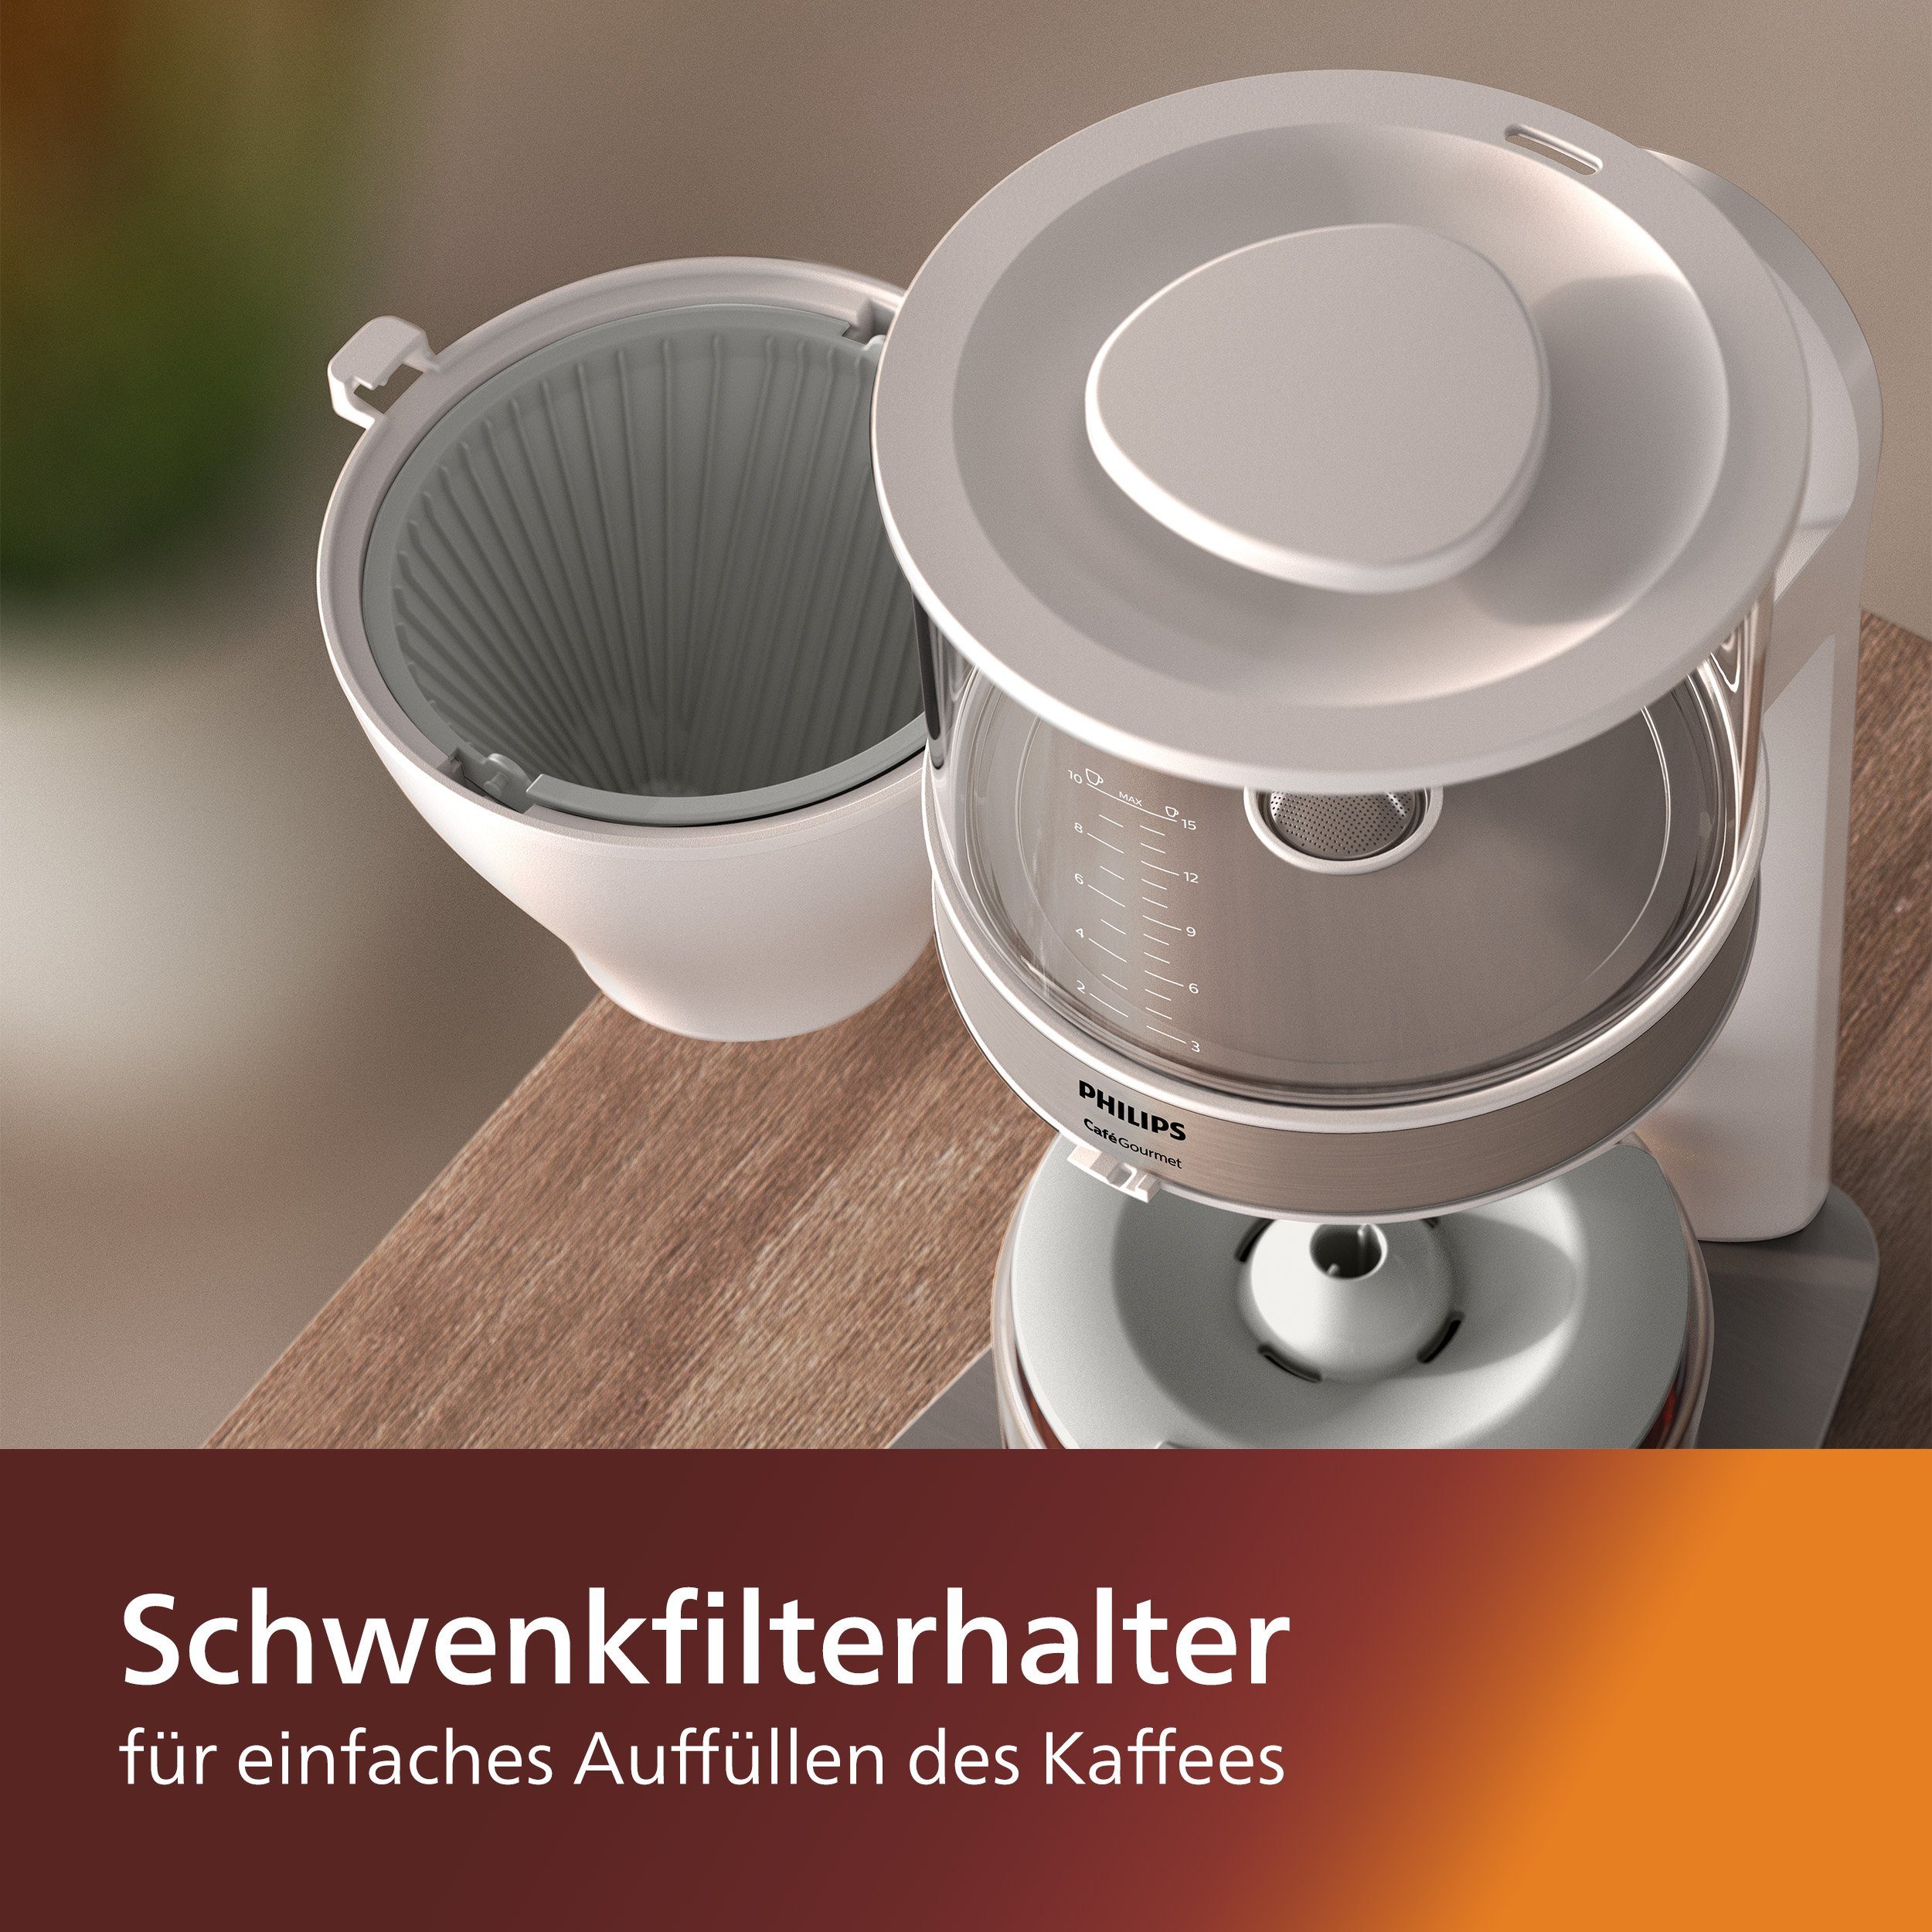 Papierfilter Philips 1x4, Schwenkfilterhalter Café Kaffeekanne, Filterkaffeemaschine weiß, 1,25l Gourmet HD5416/00 und Aroma-Twister mit Direkt-Brühprinzip,